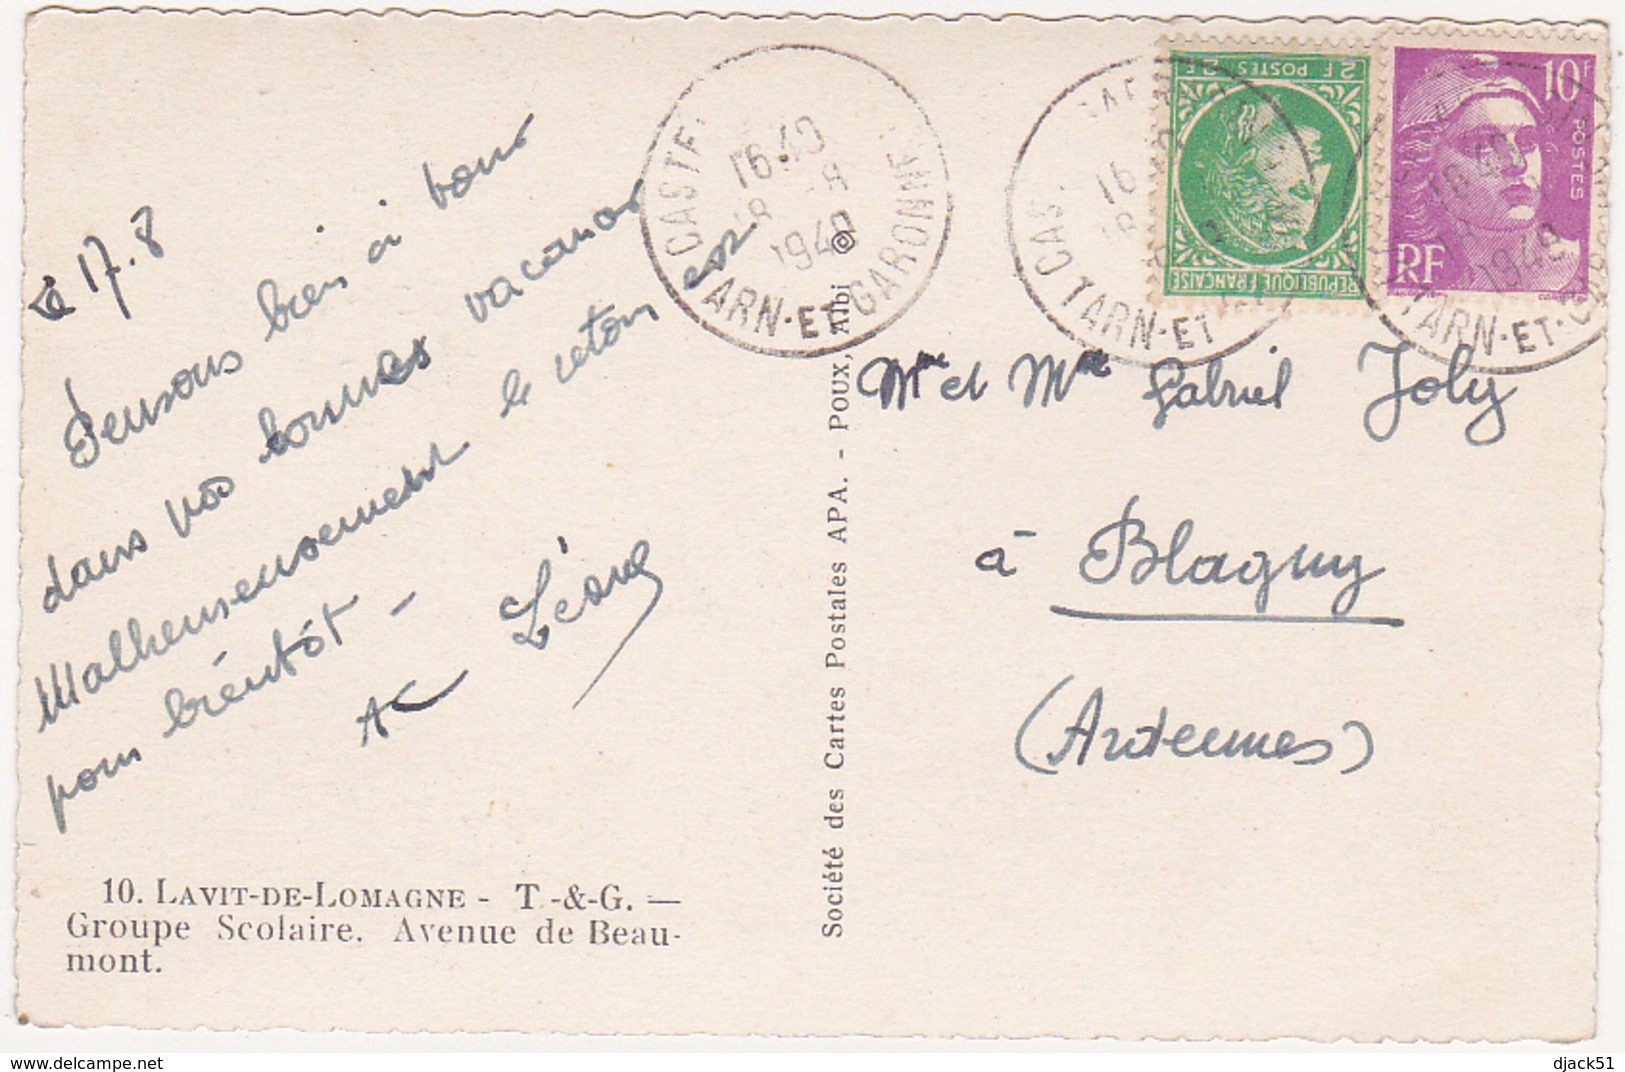 82 - LAVIT-DE-LOMAGNE (T & G) - Groupe Scolaire - Avenue De Beaumont - 1949 - Lavit